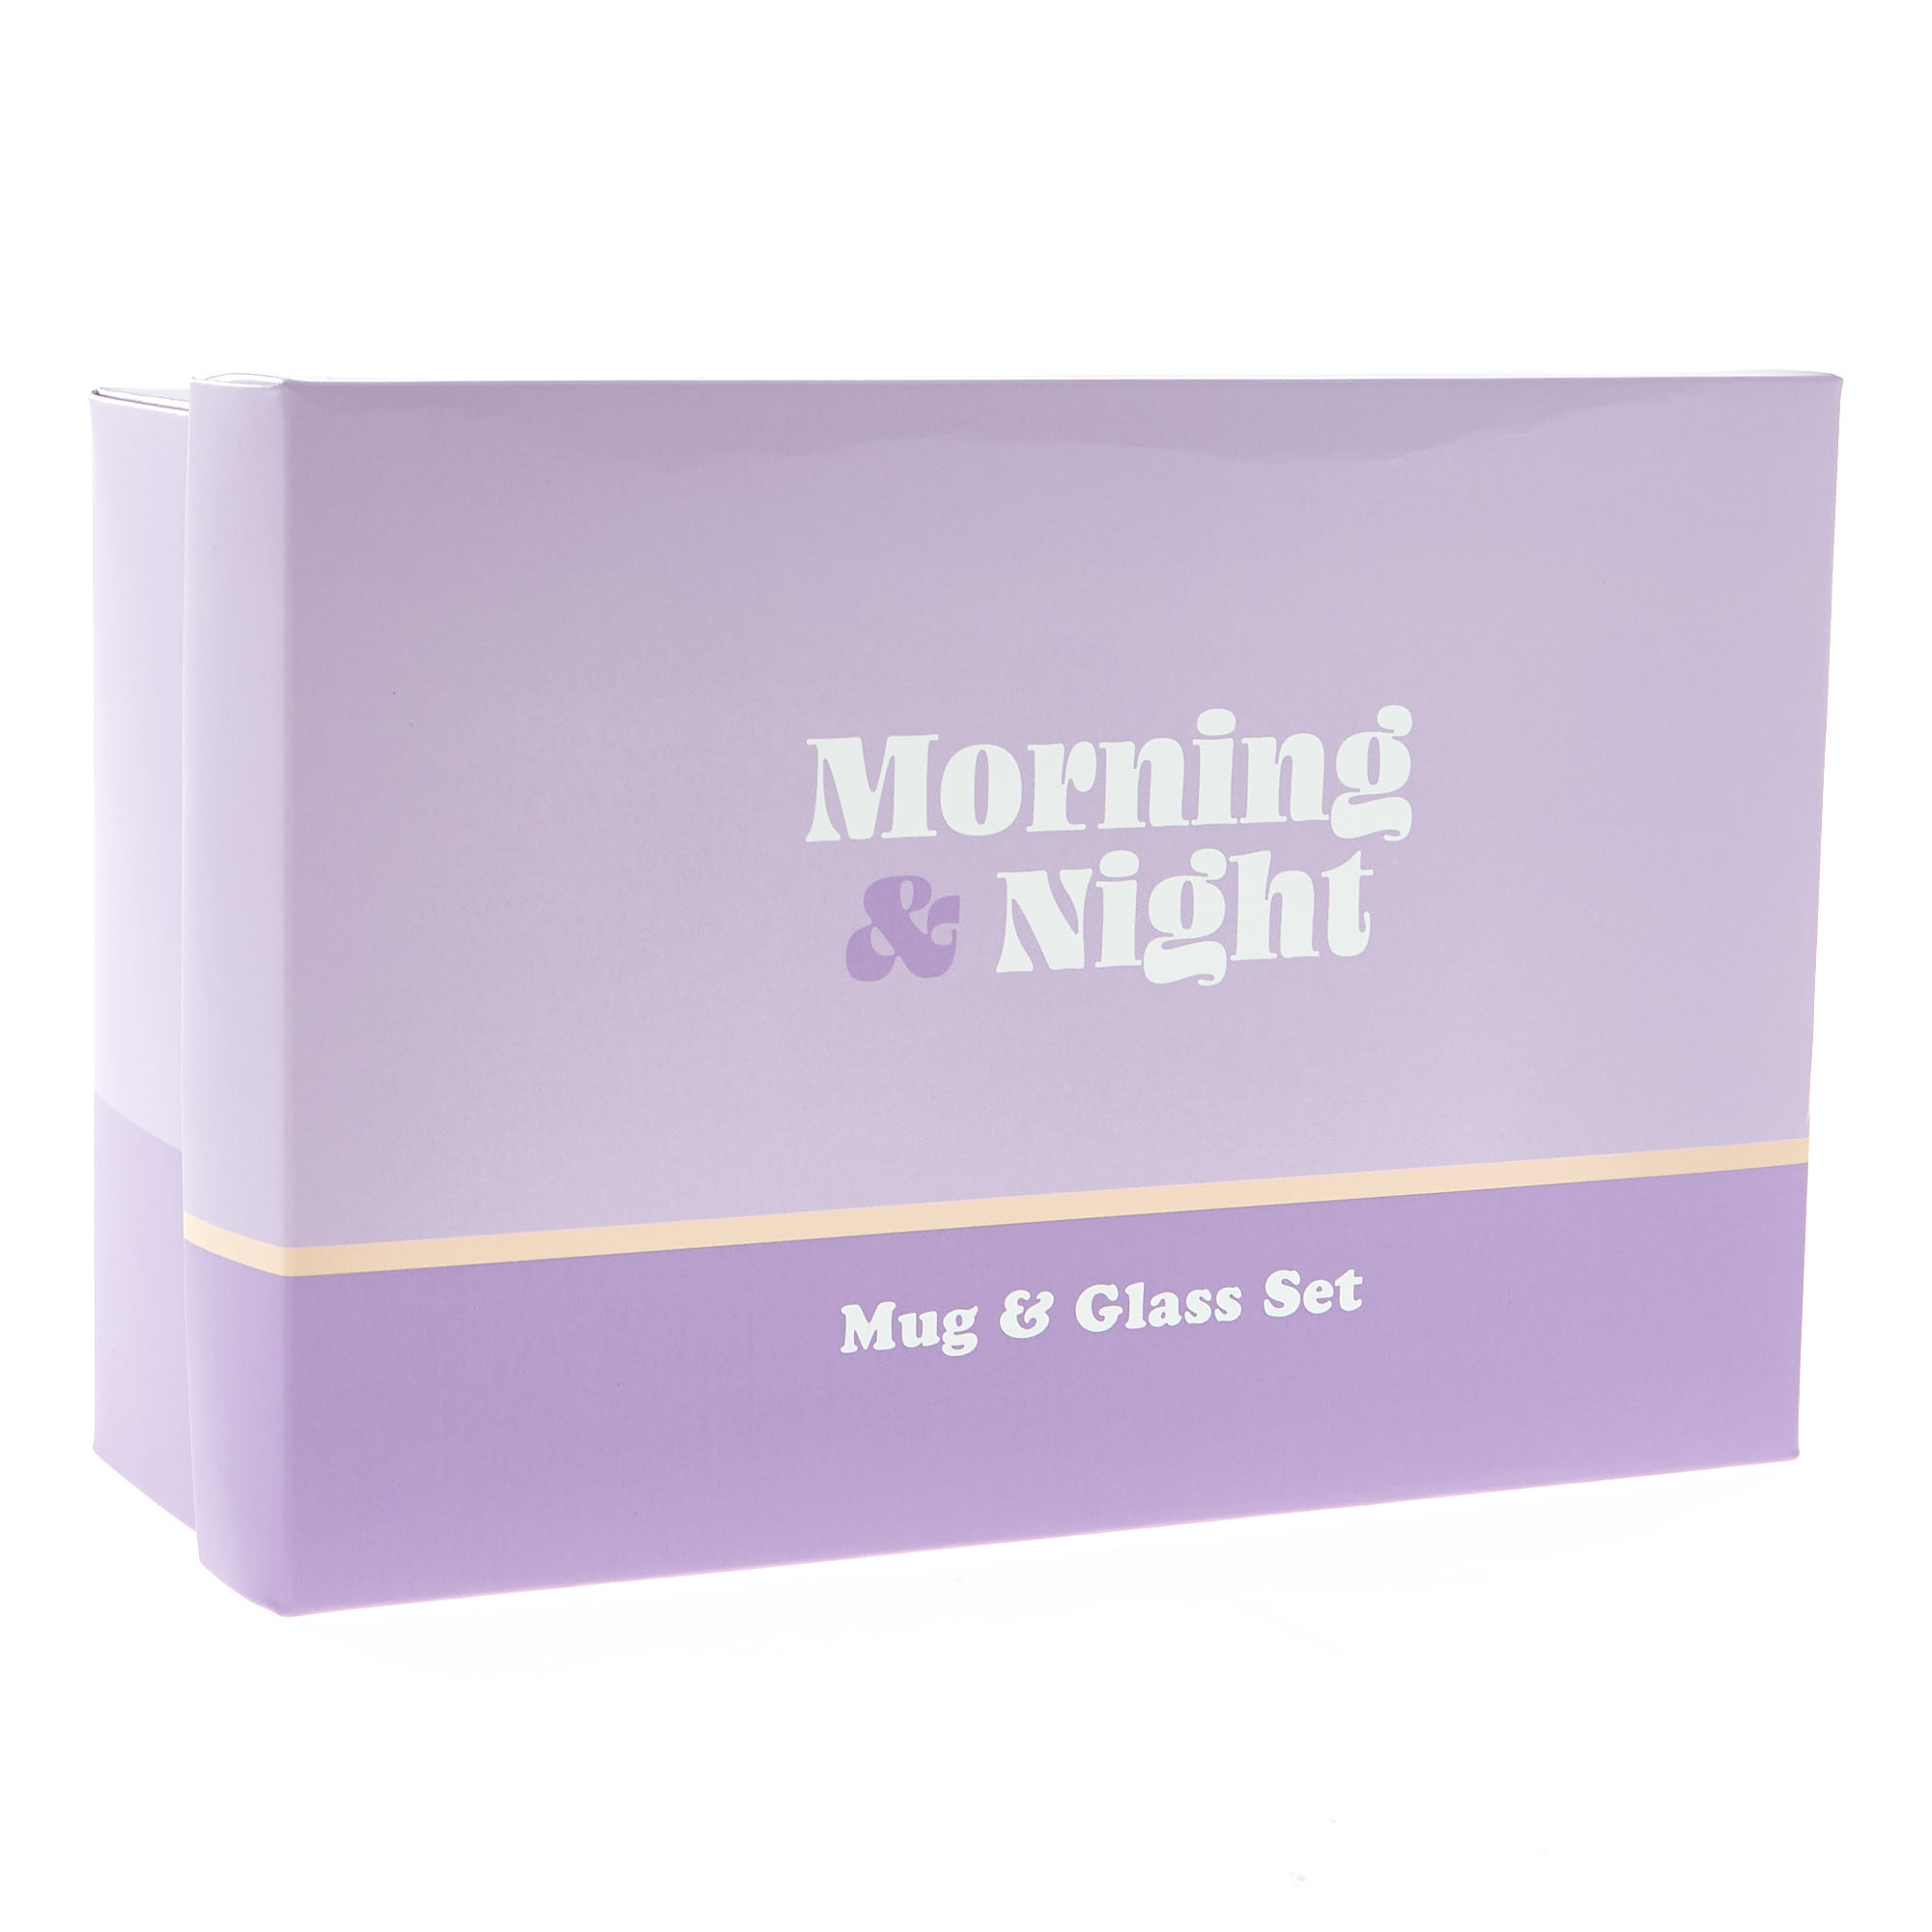 Morning & Night Mug & Glass Set